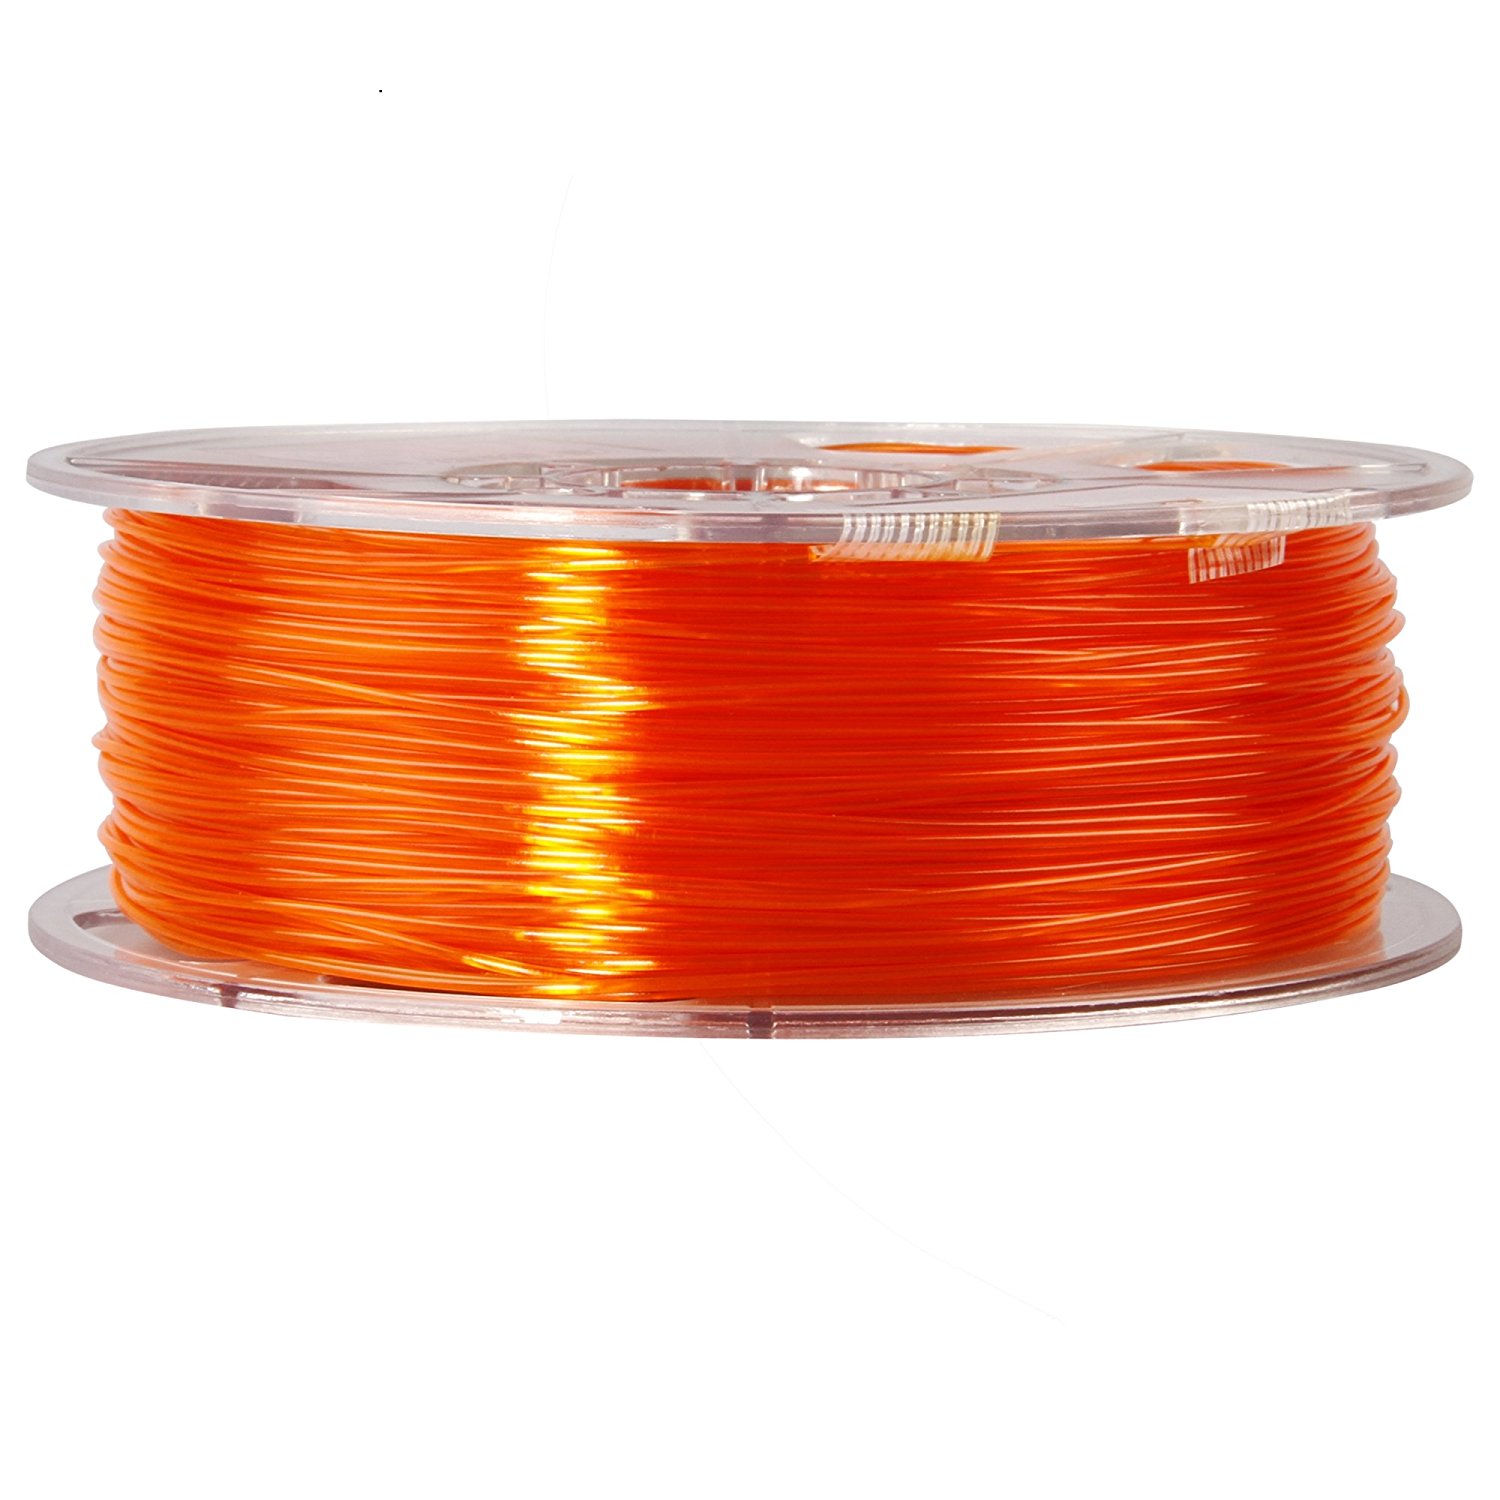 ESUN Orange PETG 1.75 mm - 3D Compare Materials